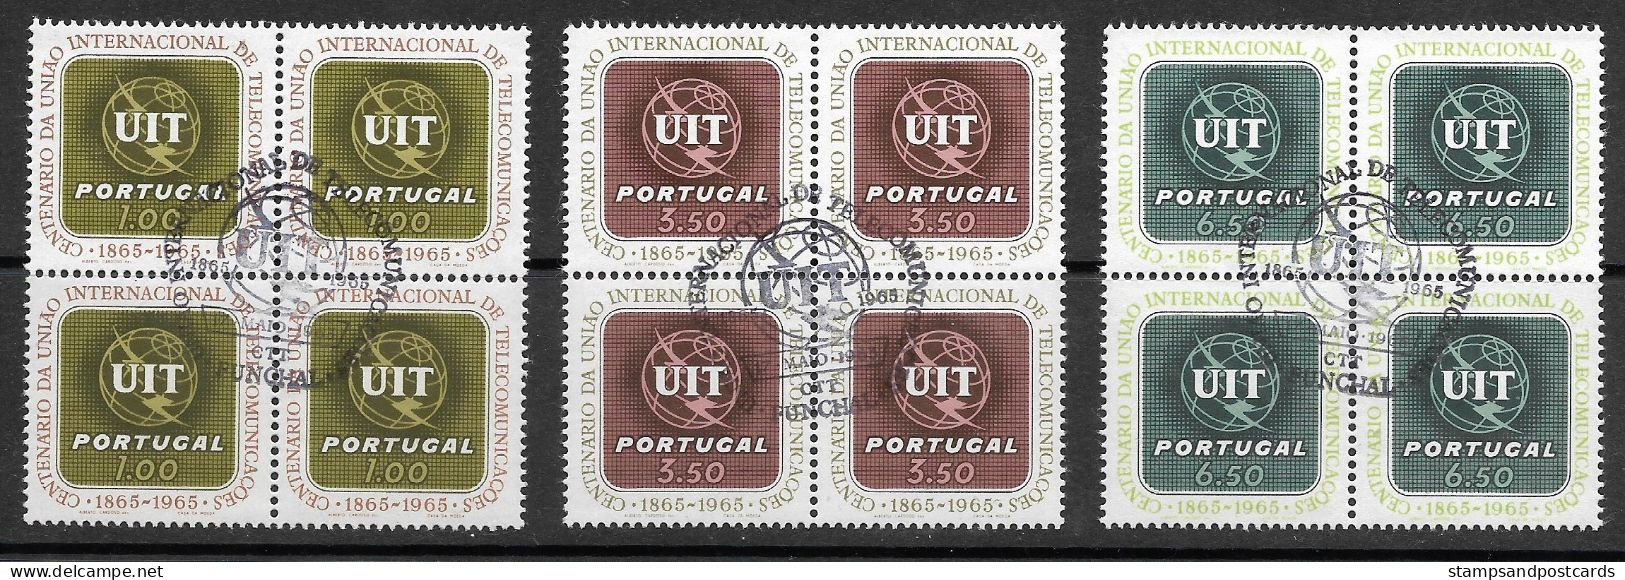 Portugal 1965 Centenaire Union Internationale Télécommunications UIT X 4 Cachet Premier Jour Funchal Madeira Madère - Used Stamps